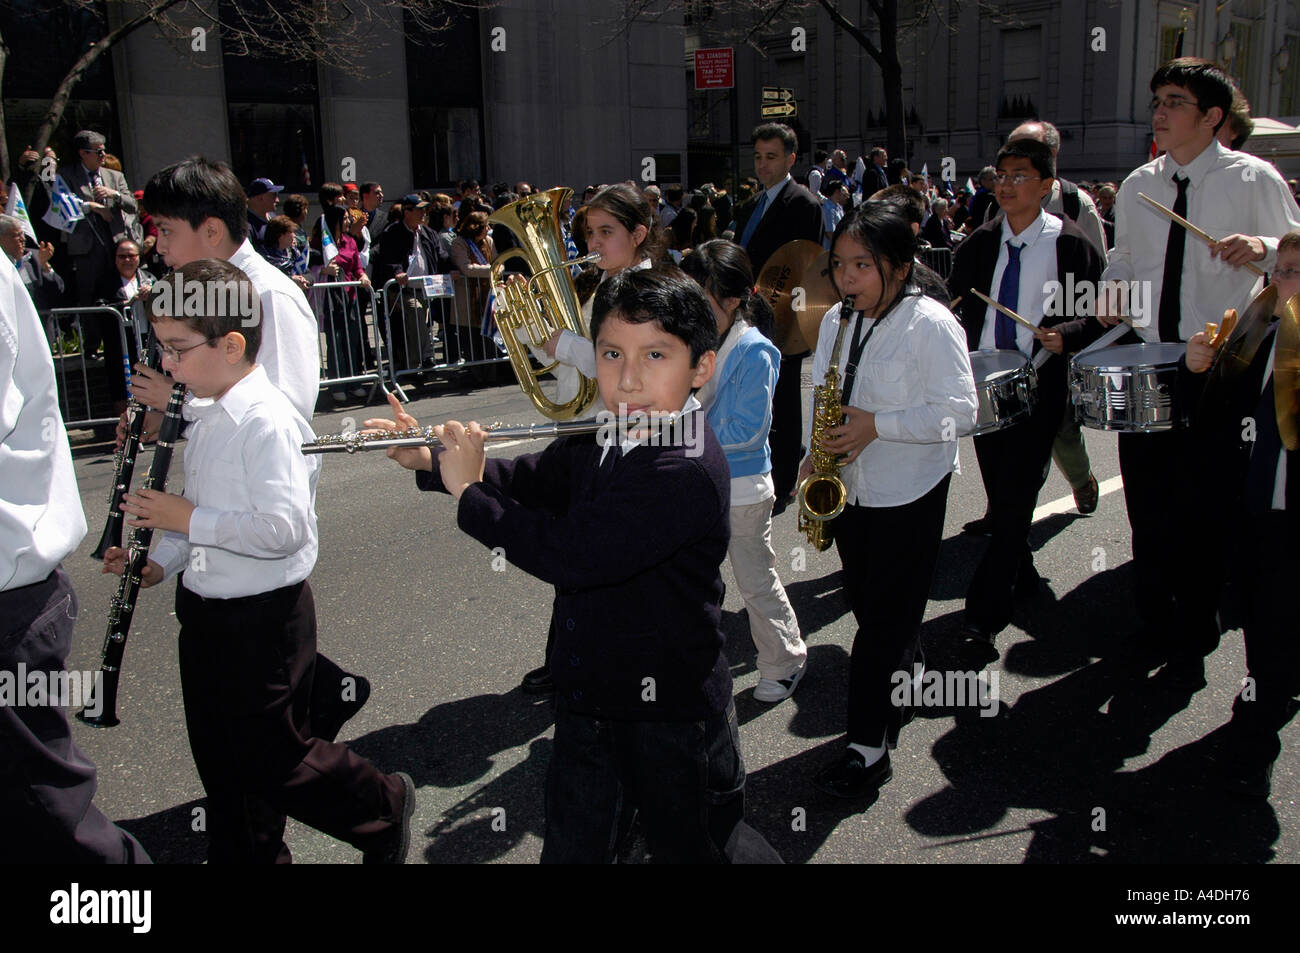 Eine NYC Schule marschierendes Band marschiert in die griechischen Indpendence Day Parade Stockfoto